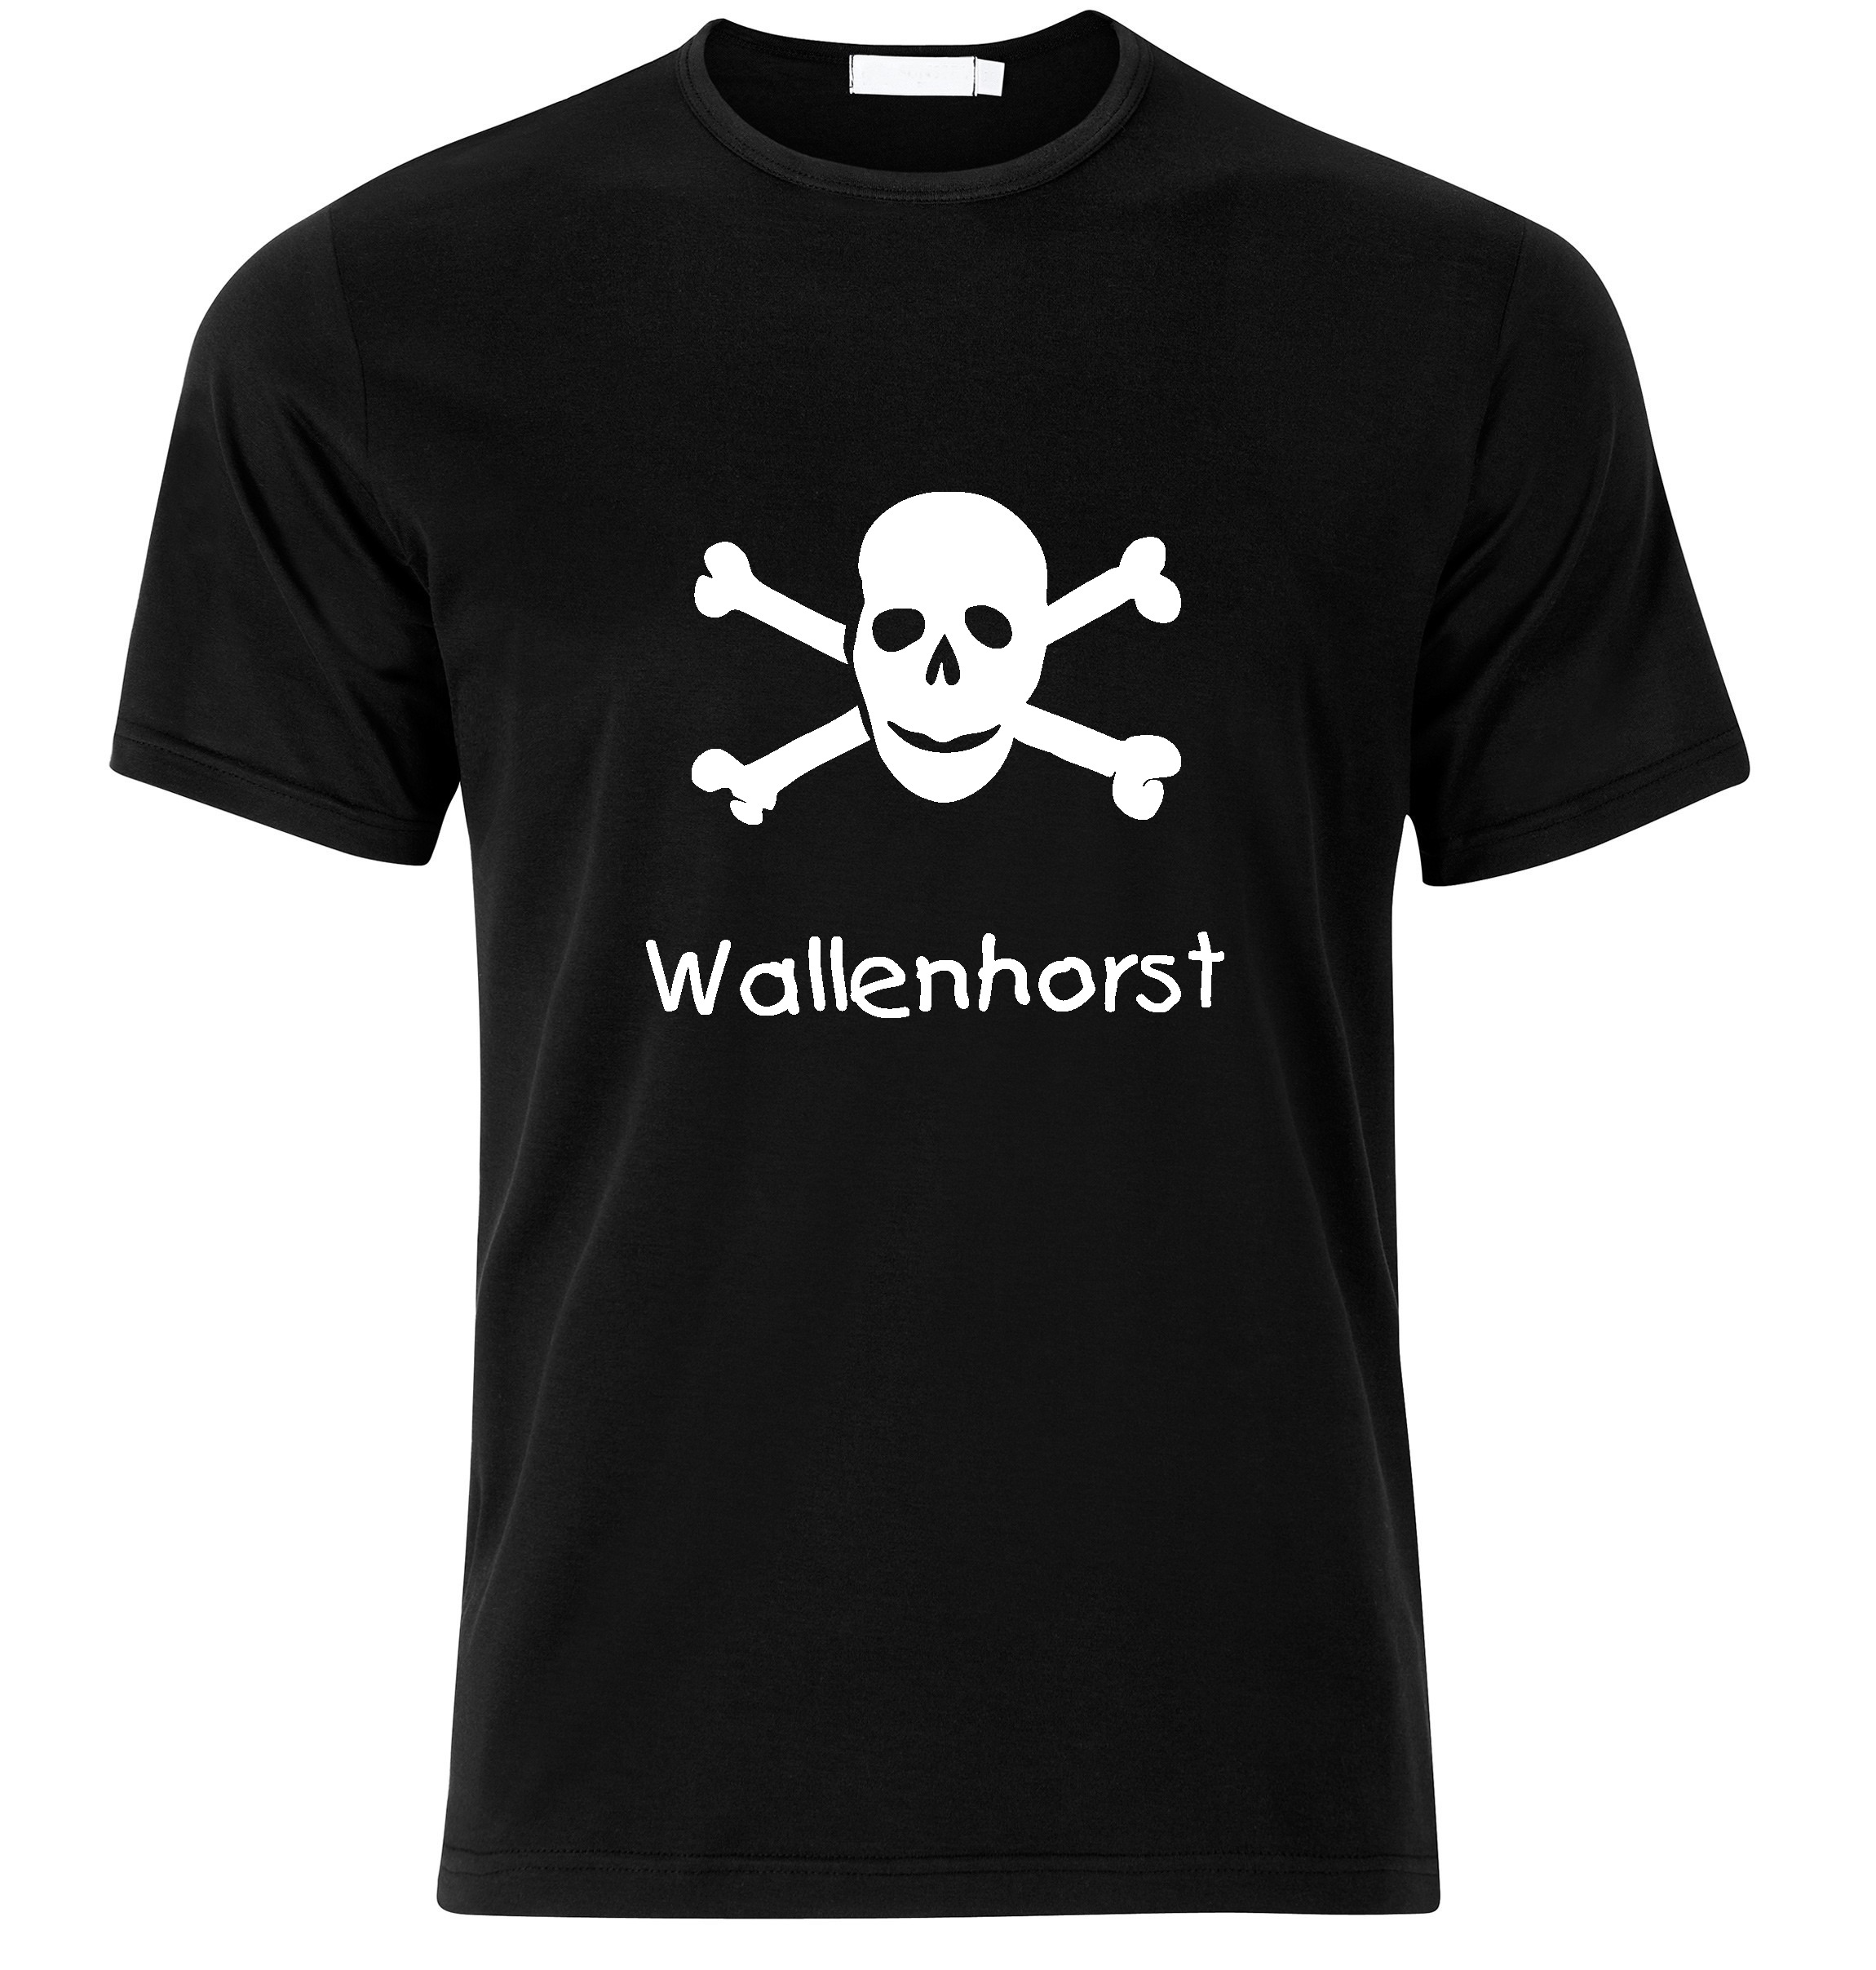 T-Shirt Wallenhorst Jolly Roger, Totenkopf